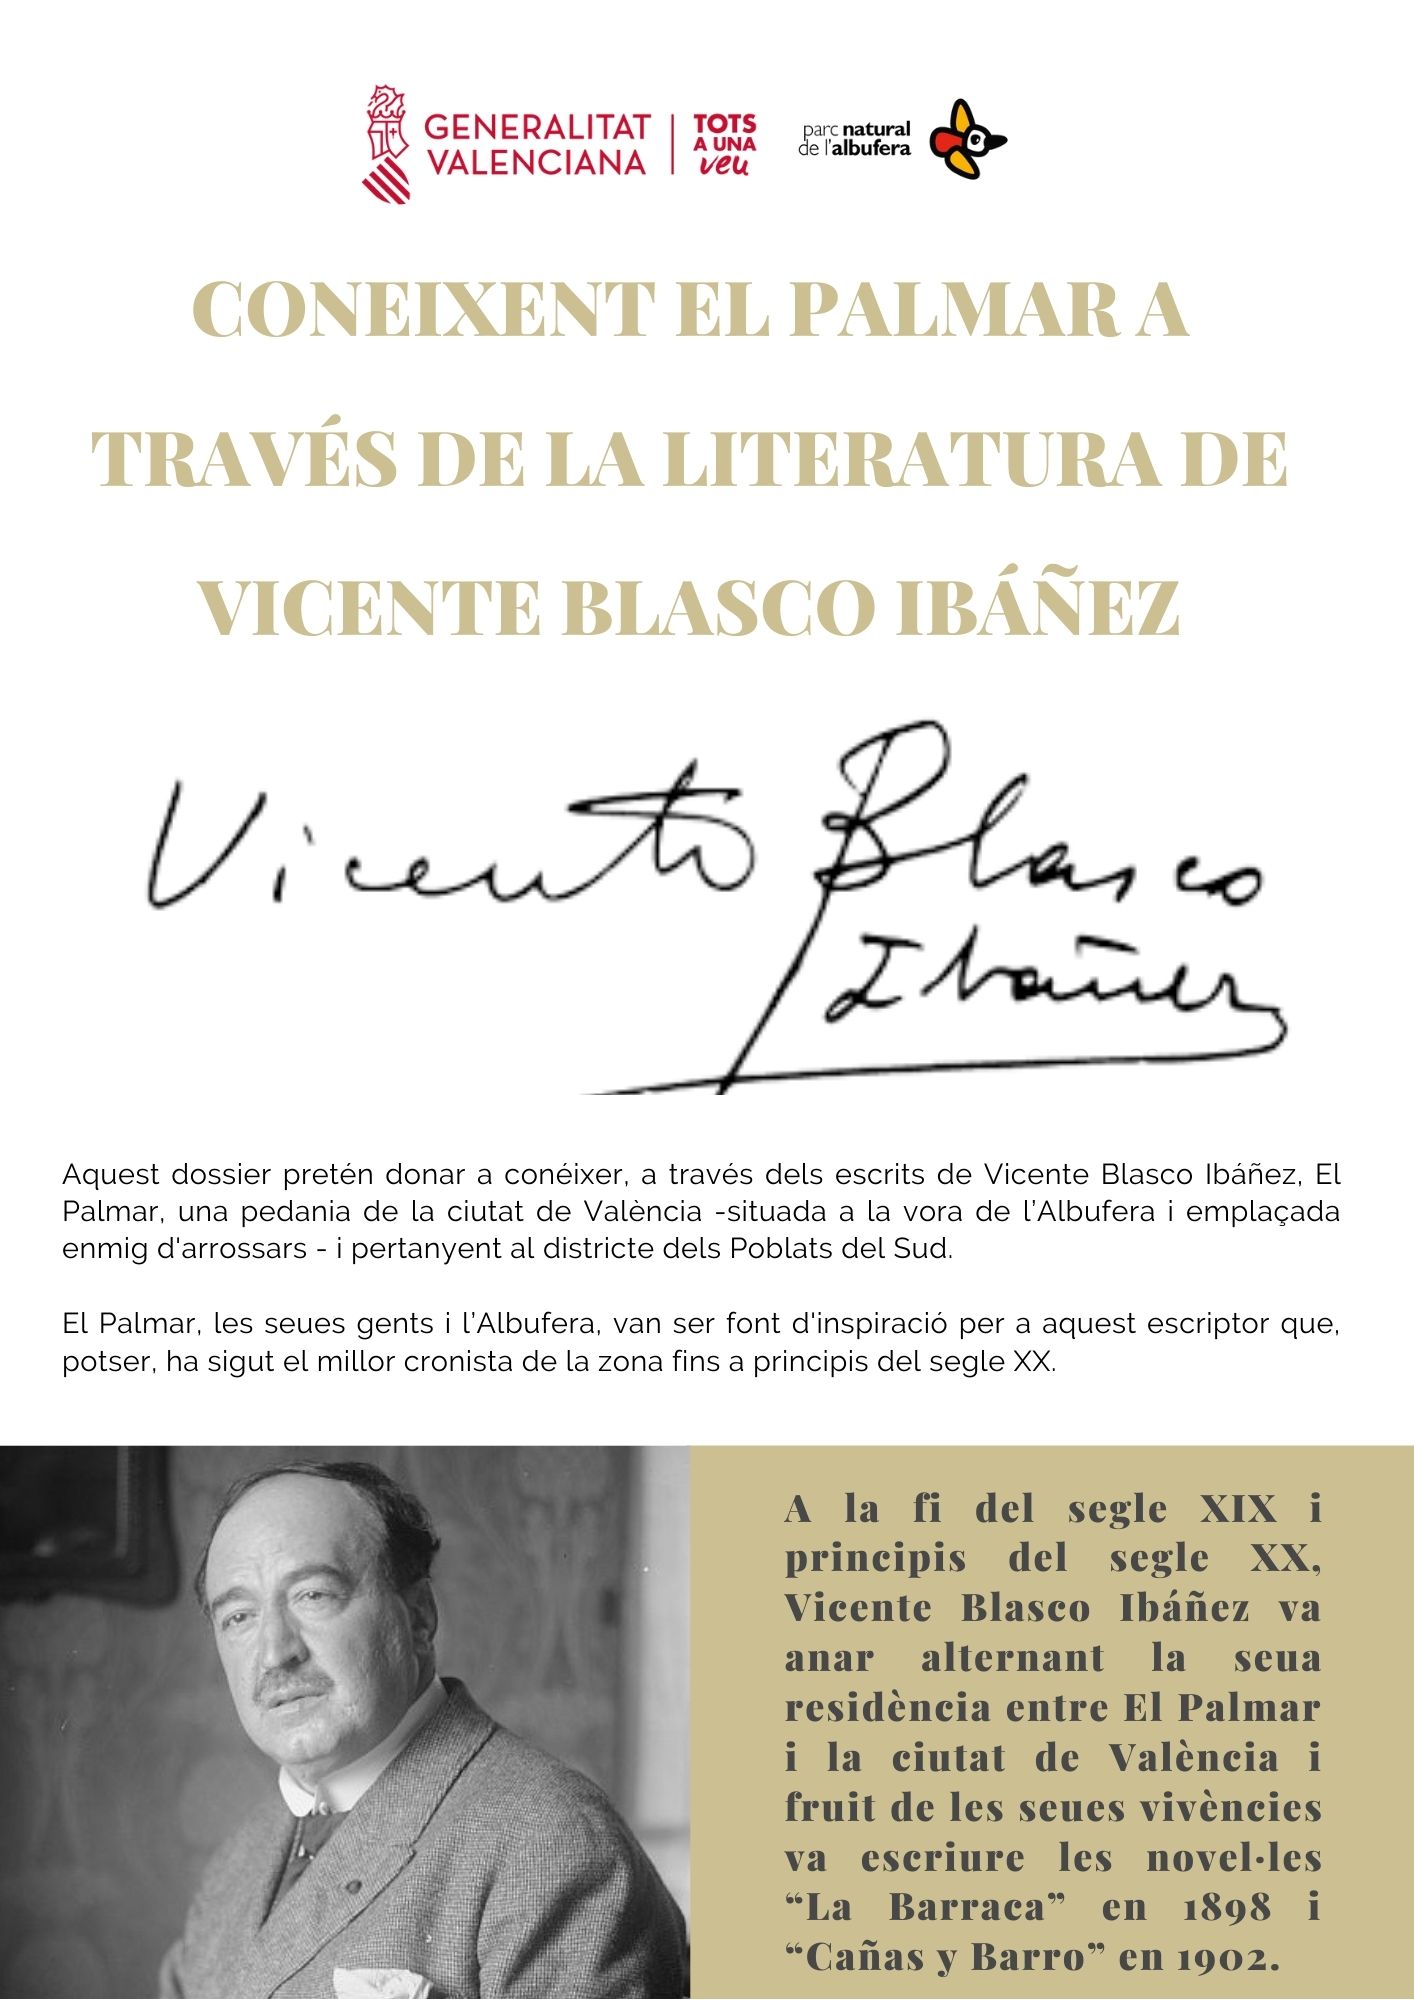 Segueix aquest enllaç per a descarregar en una nova finestra el dossier "Coneixent El Palmar a través de la literatura de Vicente Blasco Ibáñez.pdf"